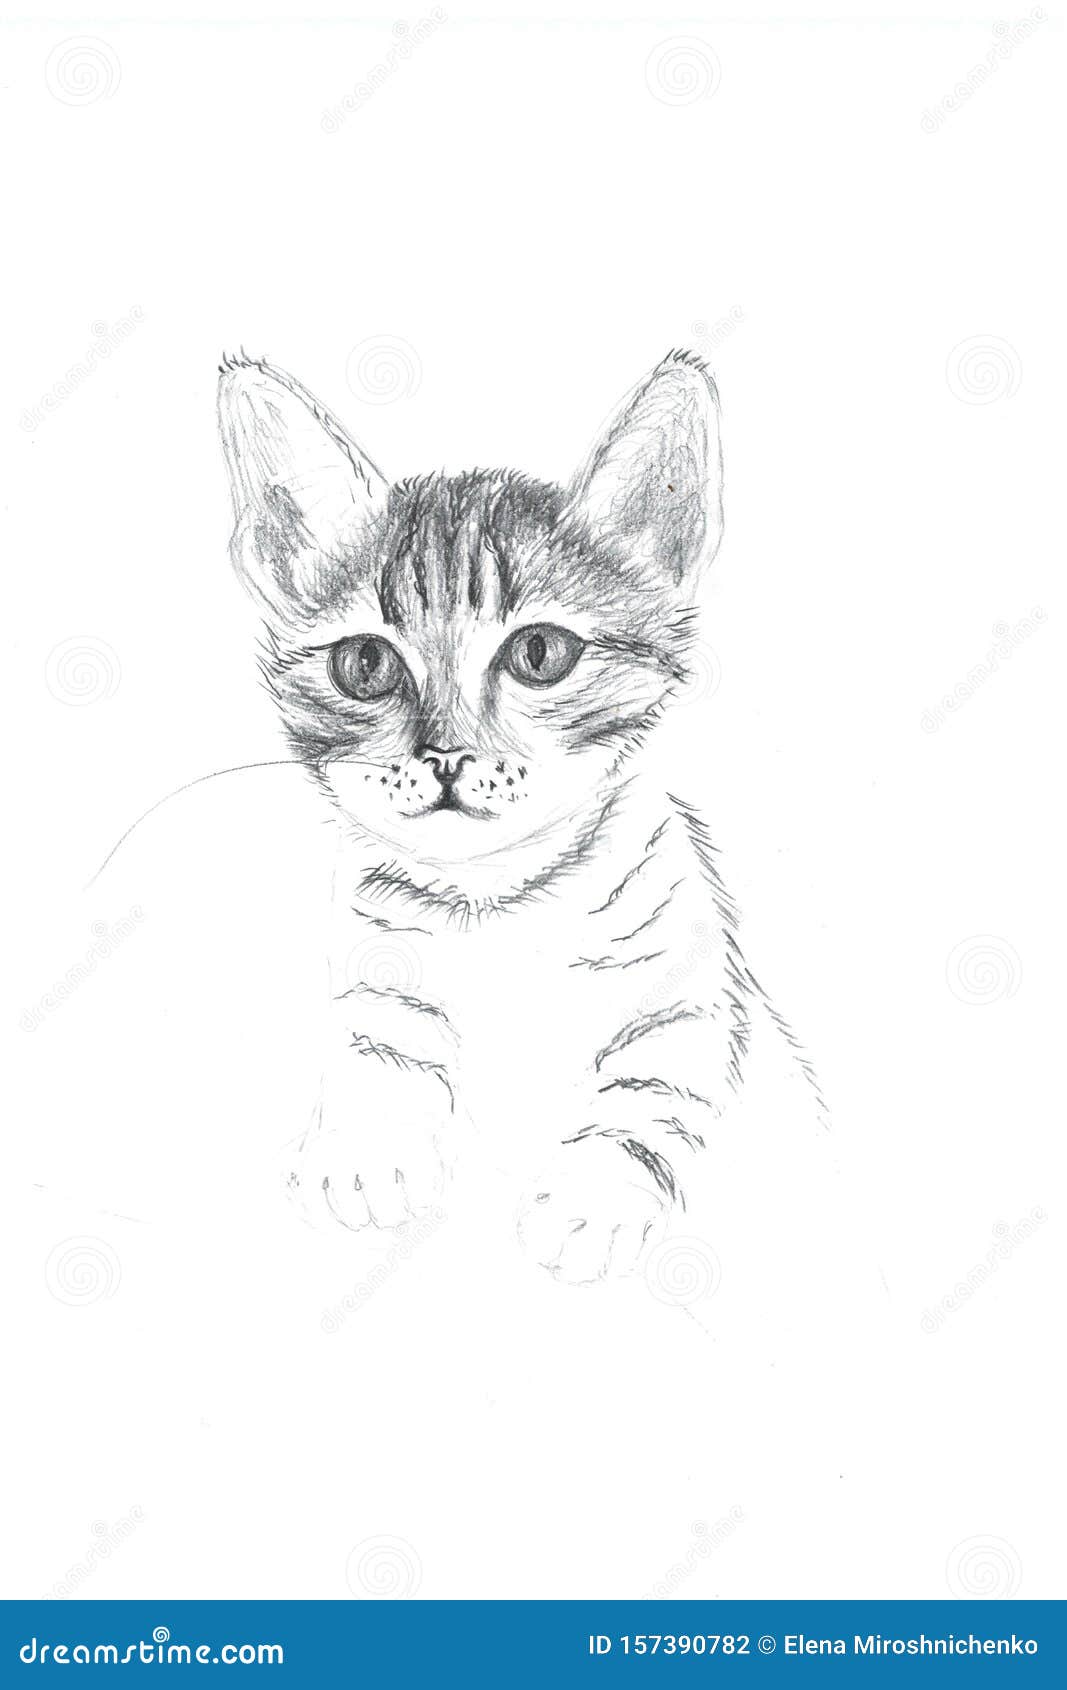 meus desenhos do meu caderno antigo part 1 #desenhos#gatos#fy#antigo#c